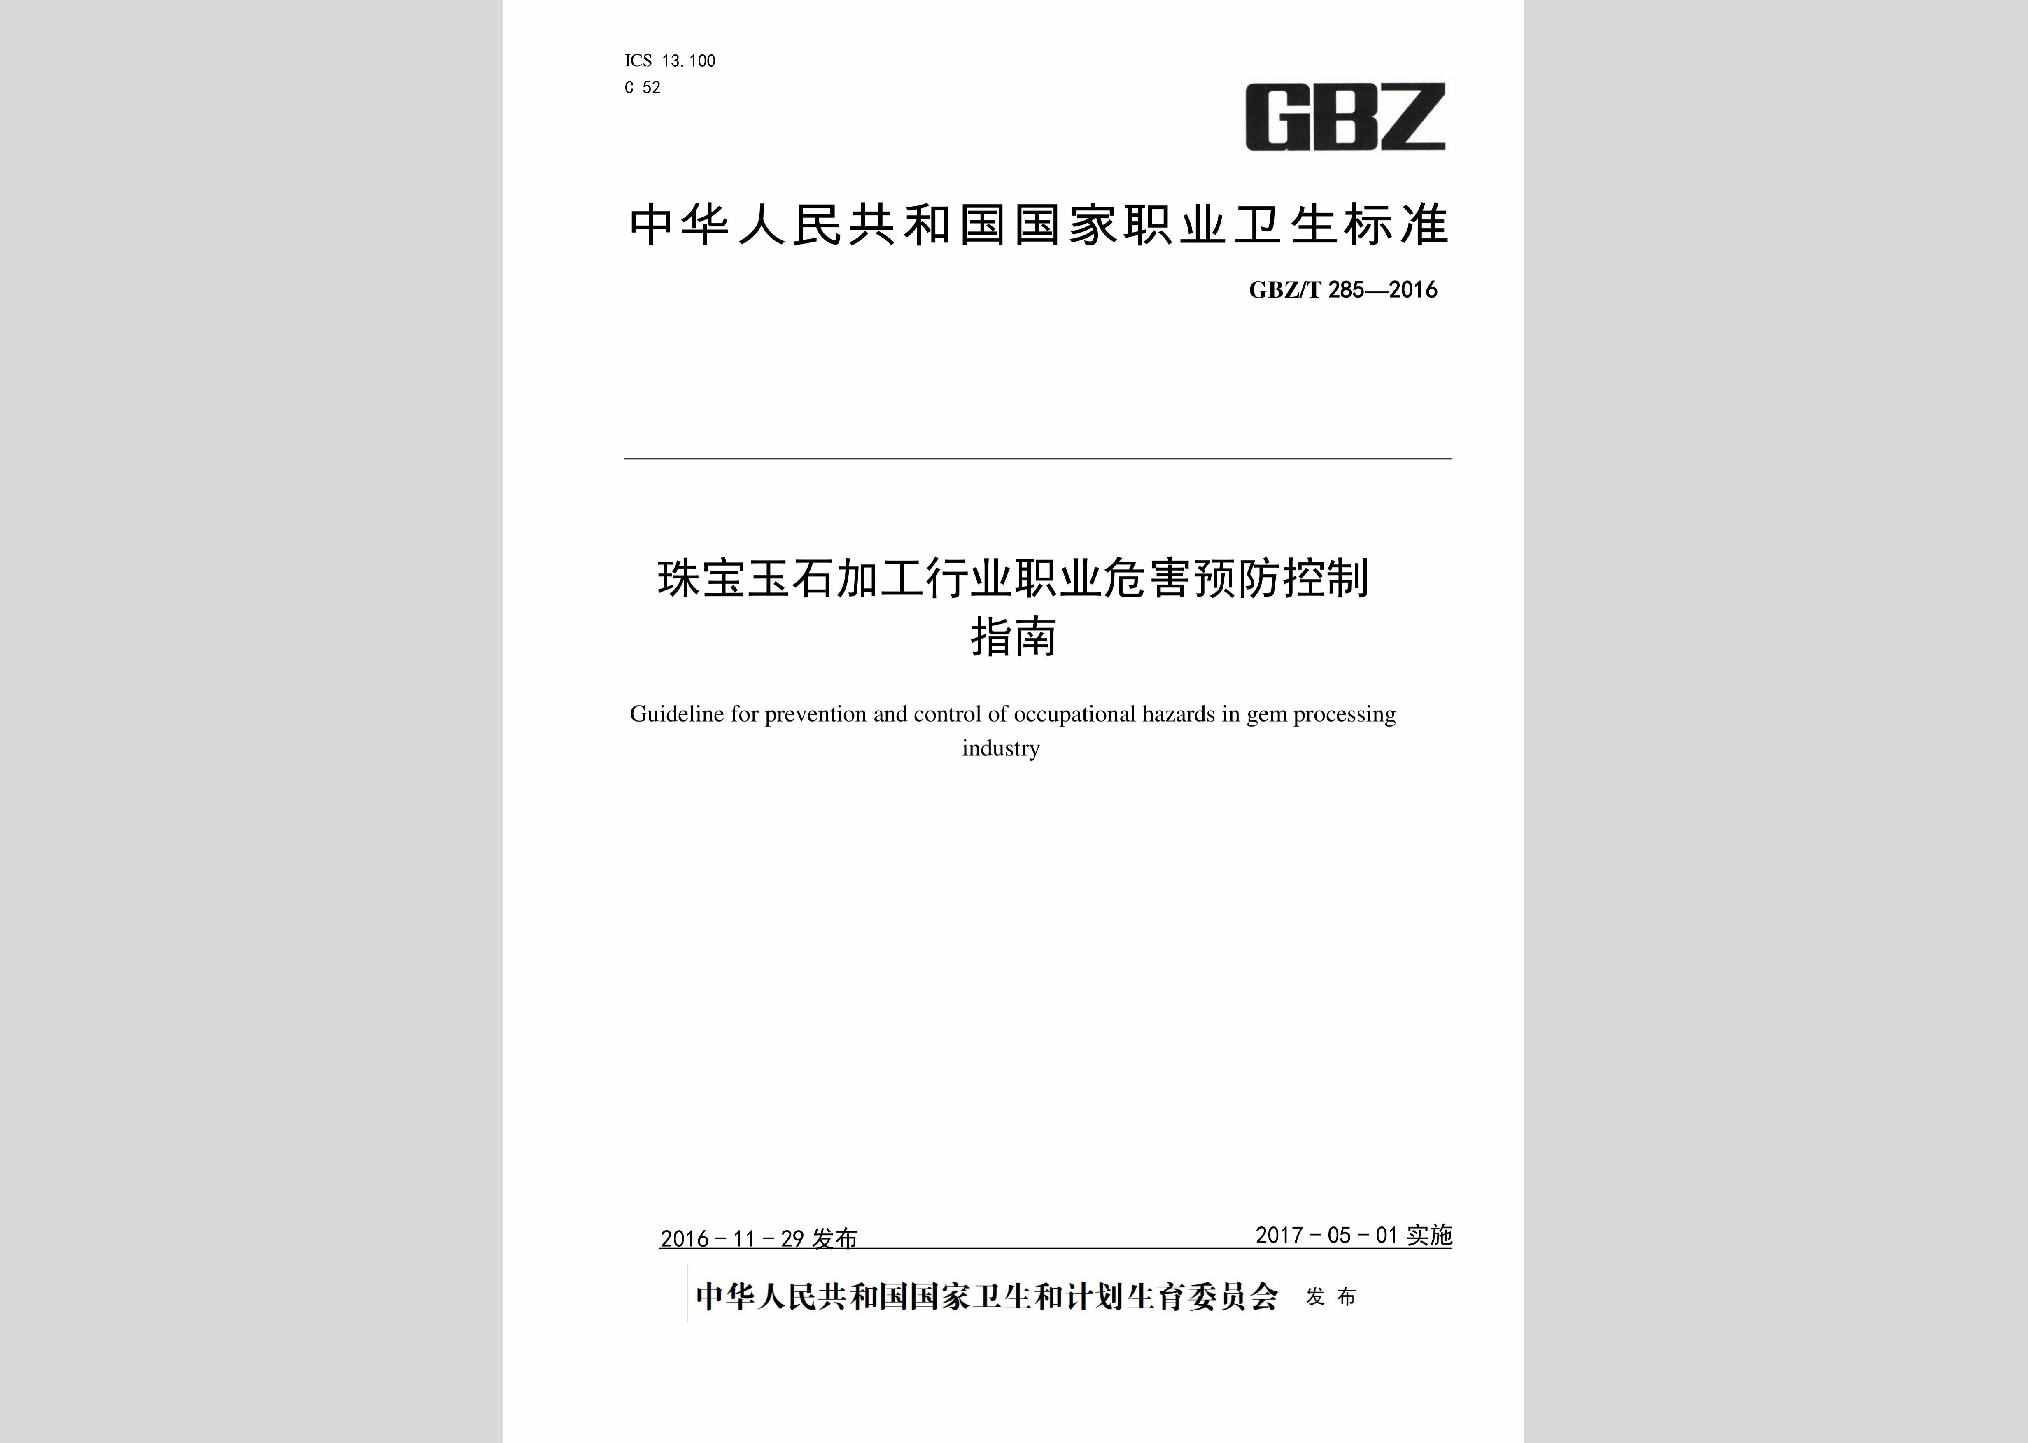 GBZ/T285-2016：珠宝玉石加工行业职业病危害预防控制指南